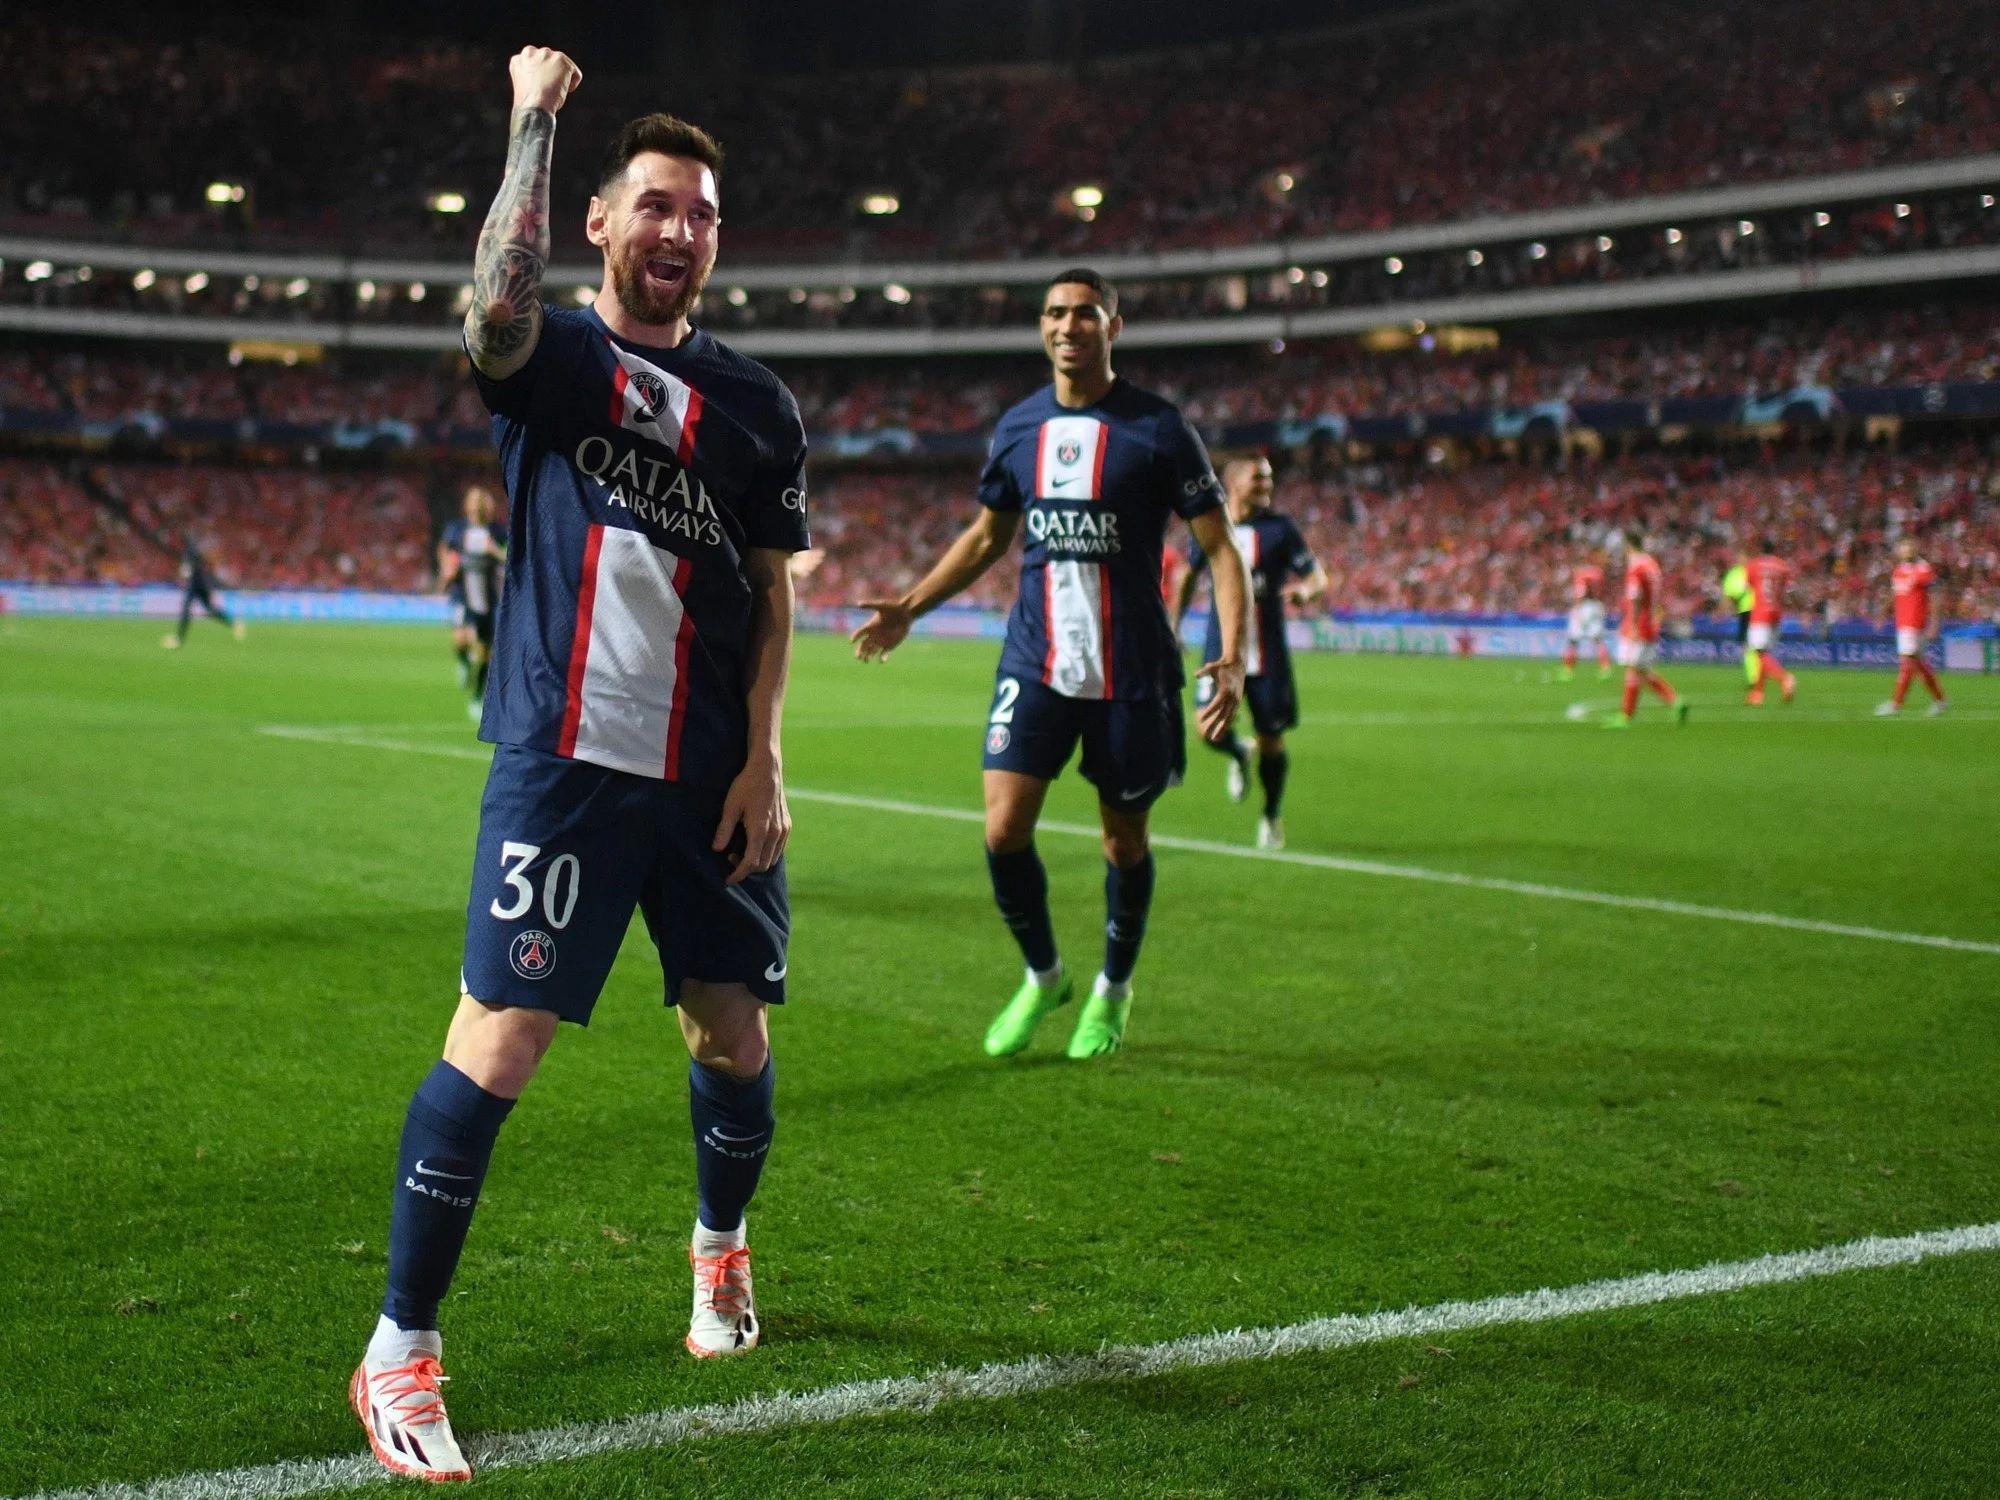 Tranquilidad- Messi fue dado de alta y retorna para el claacutesico PSG vs Olympique de Marsella